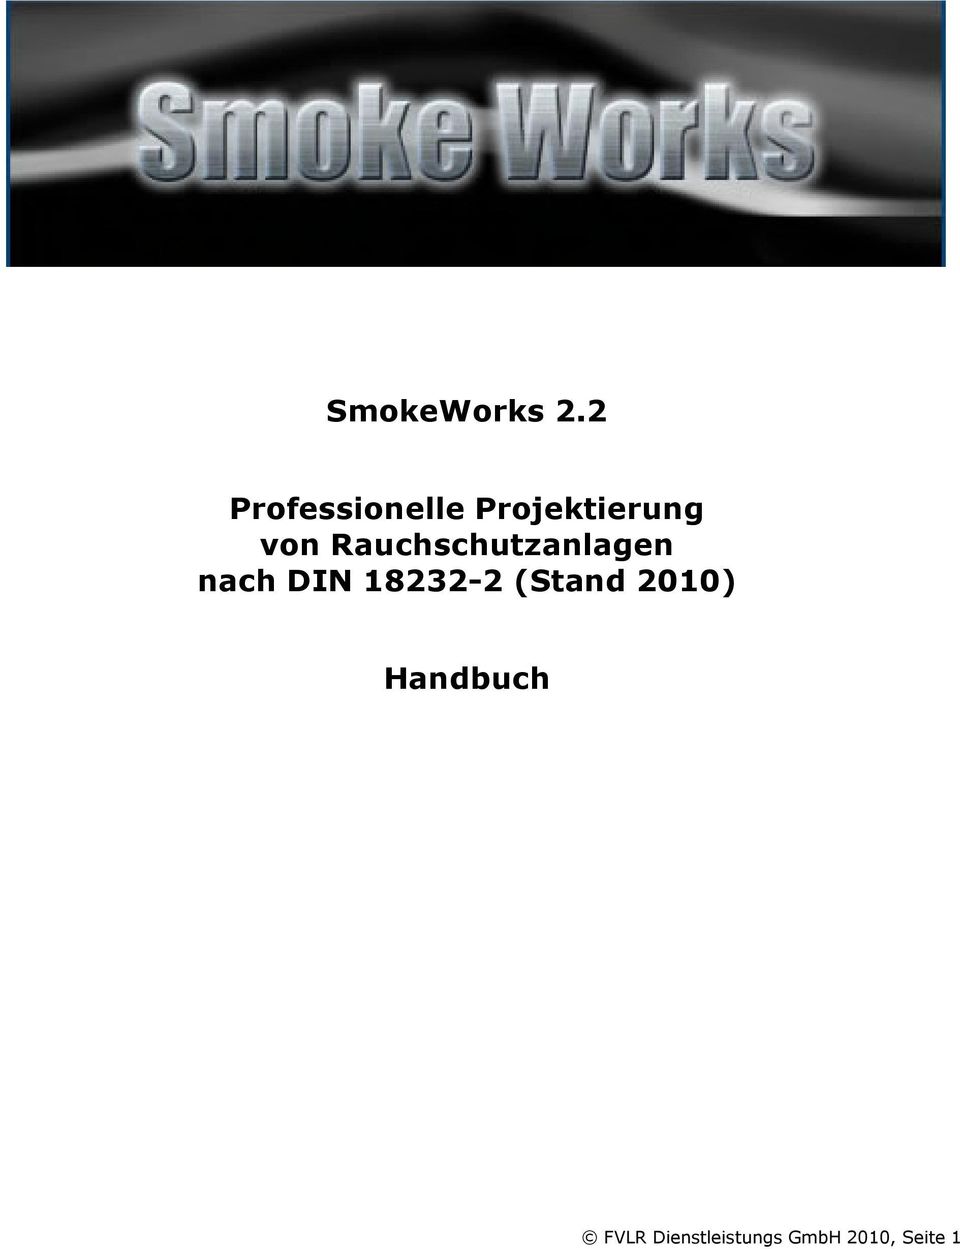 Rauchschutzanlagen nach DIN 18232-2